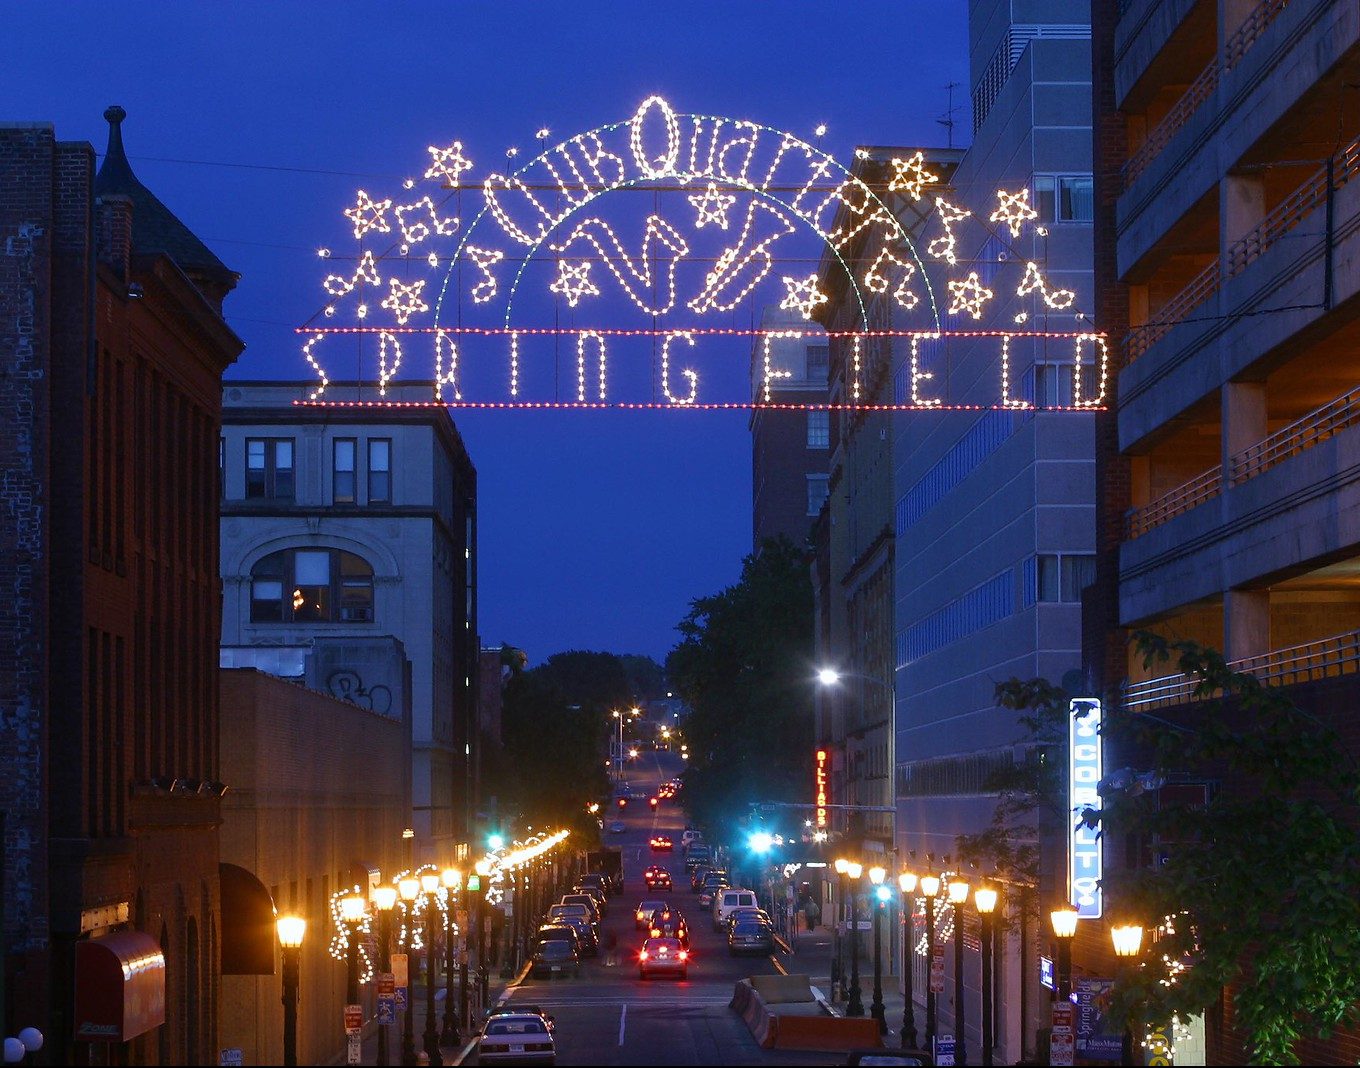 Springfield, MA Club Quarter street at night